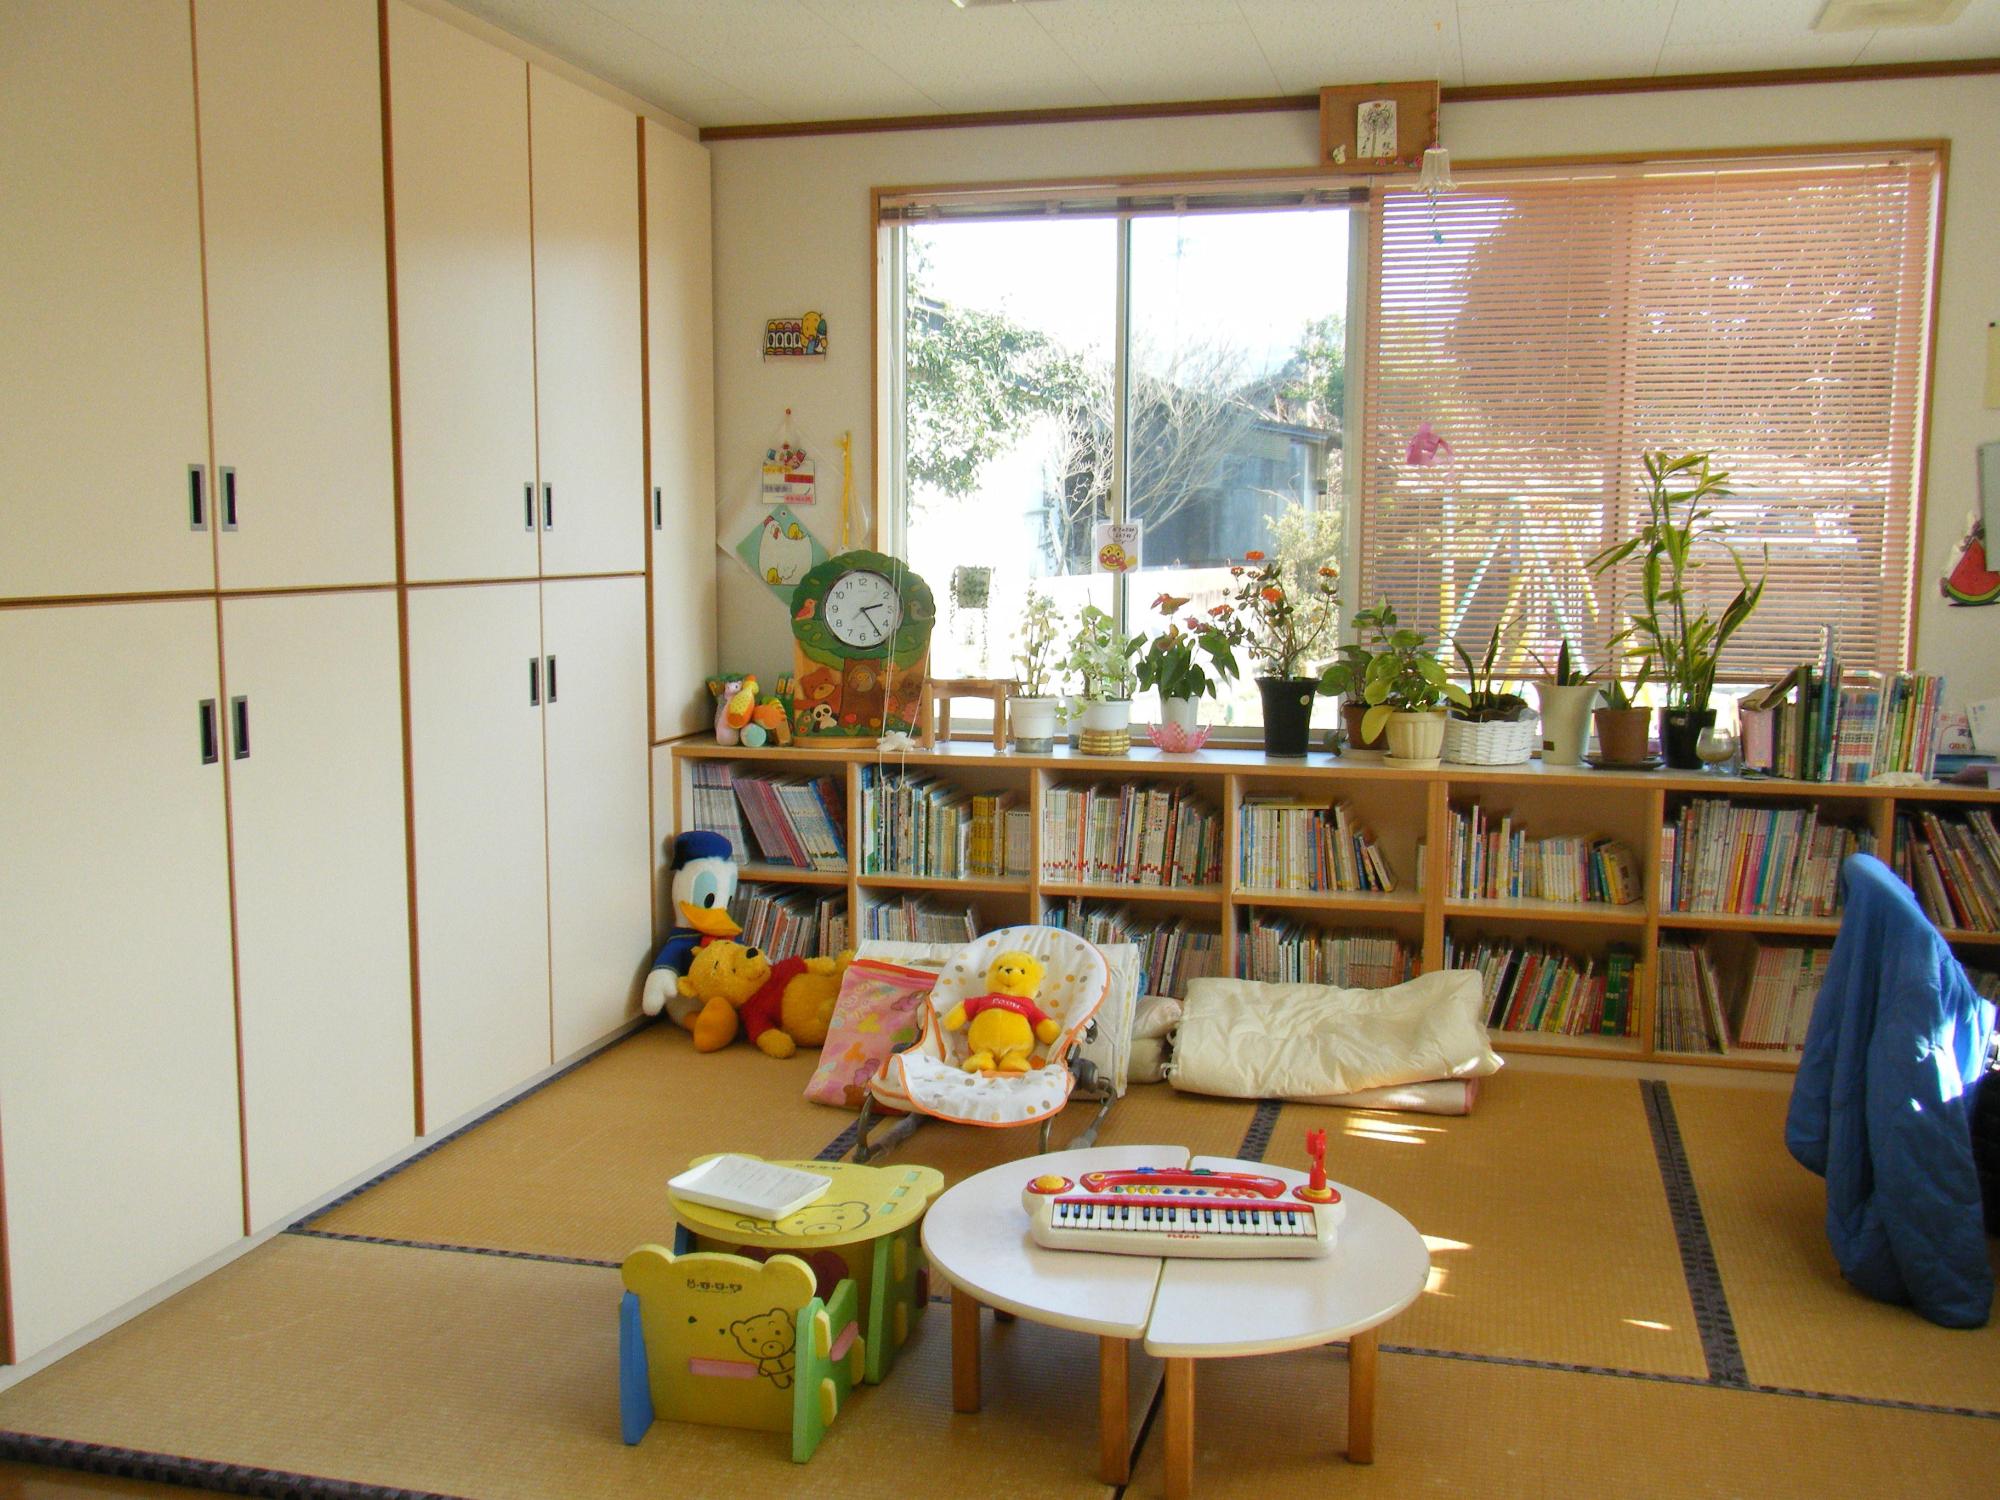 むつみ保育園子育て支援センター内観の写真。畳敷きの上にぬいぐるみなどの玩具があり、本棚には絵本が並んでいます。